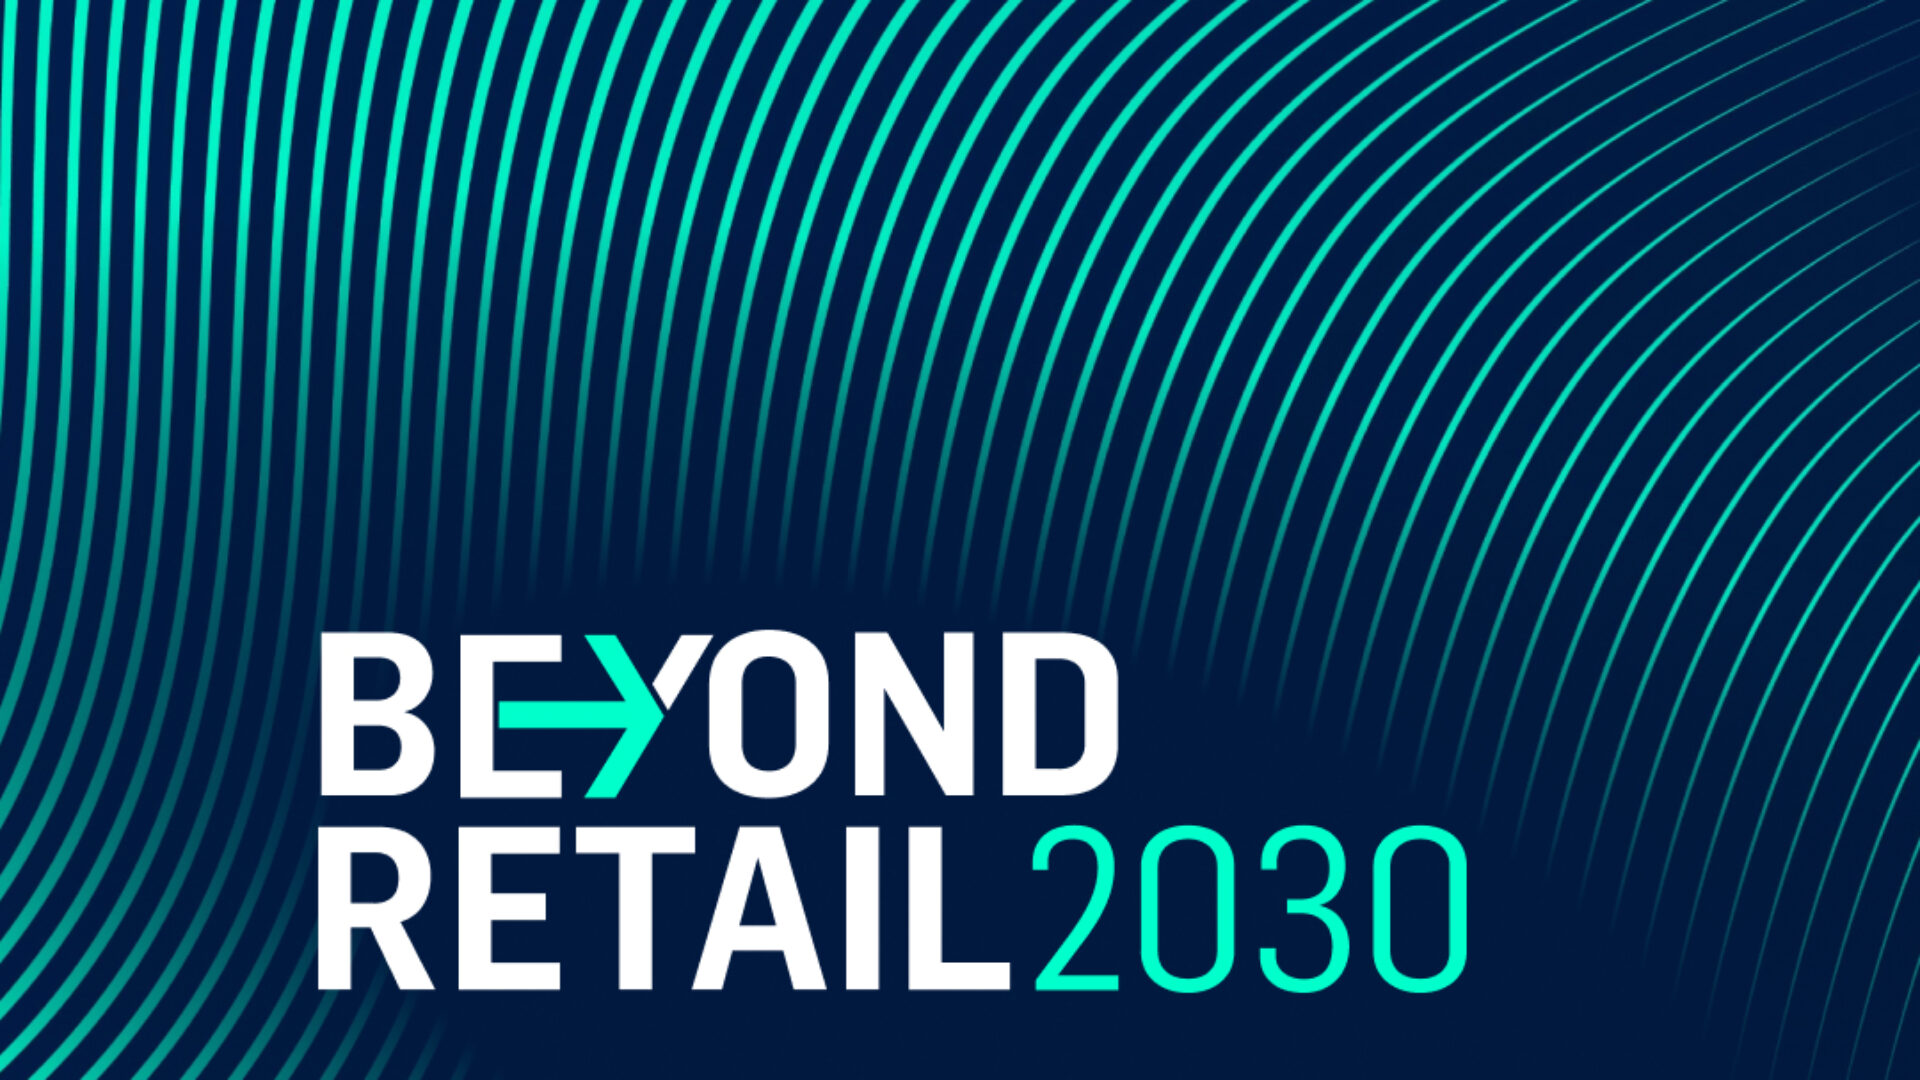 Beyond Retail 2030